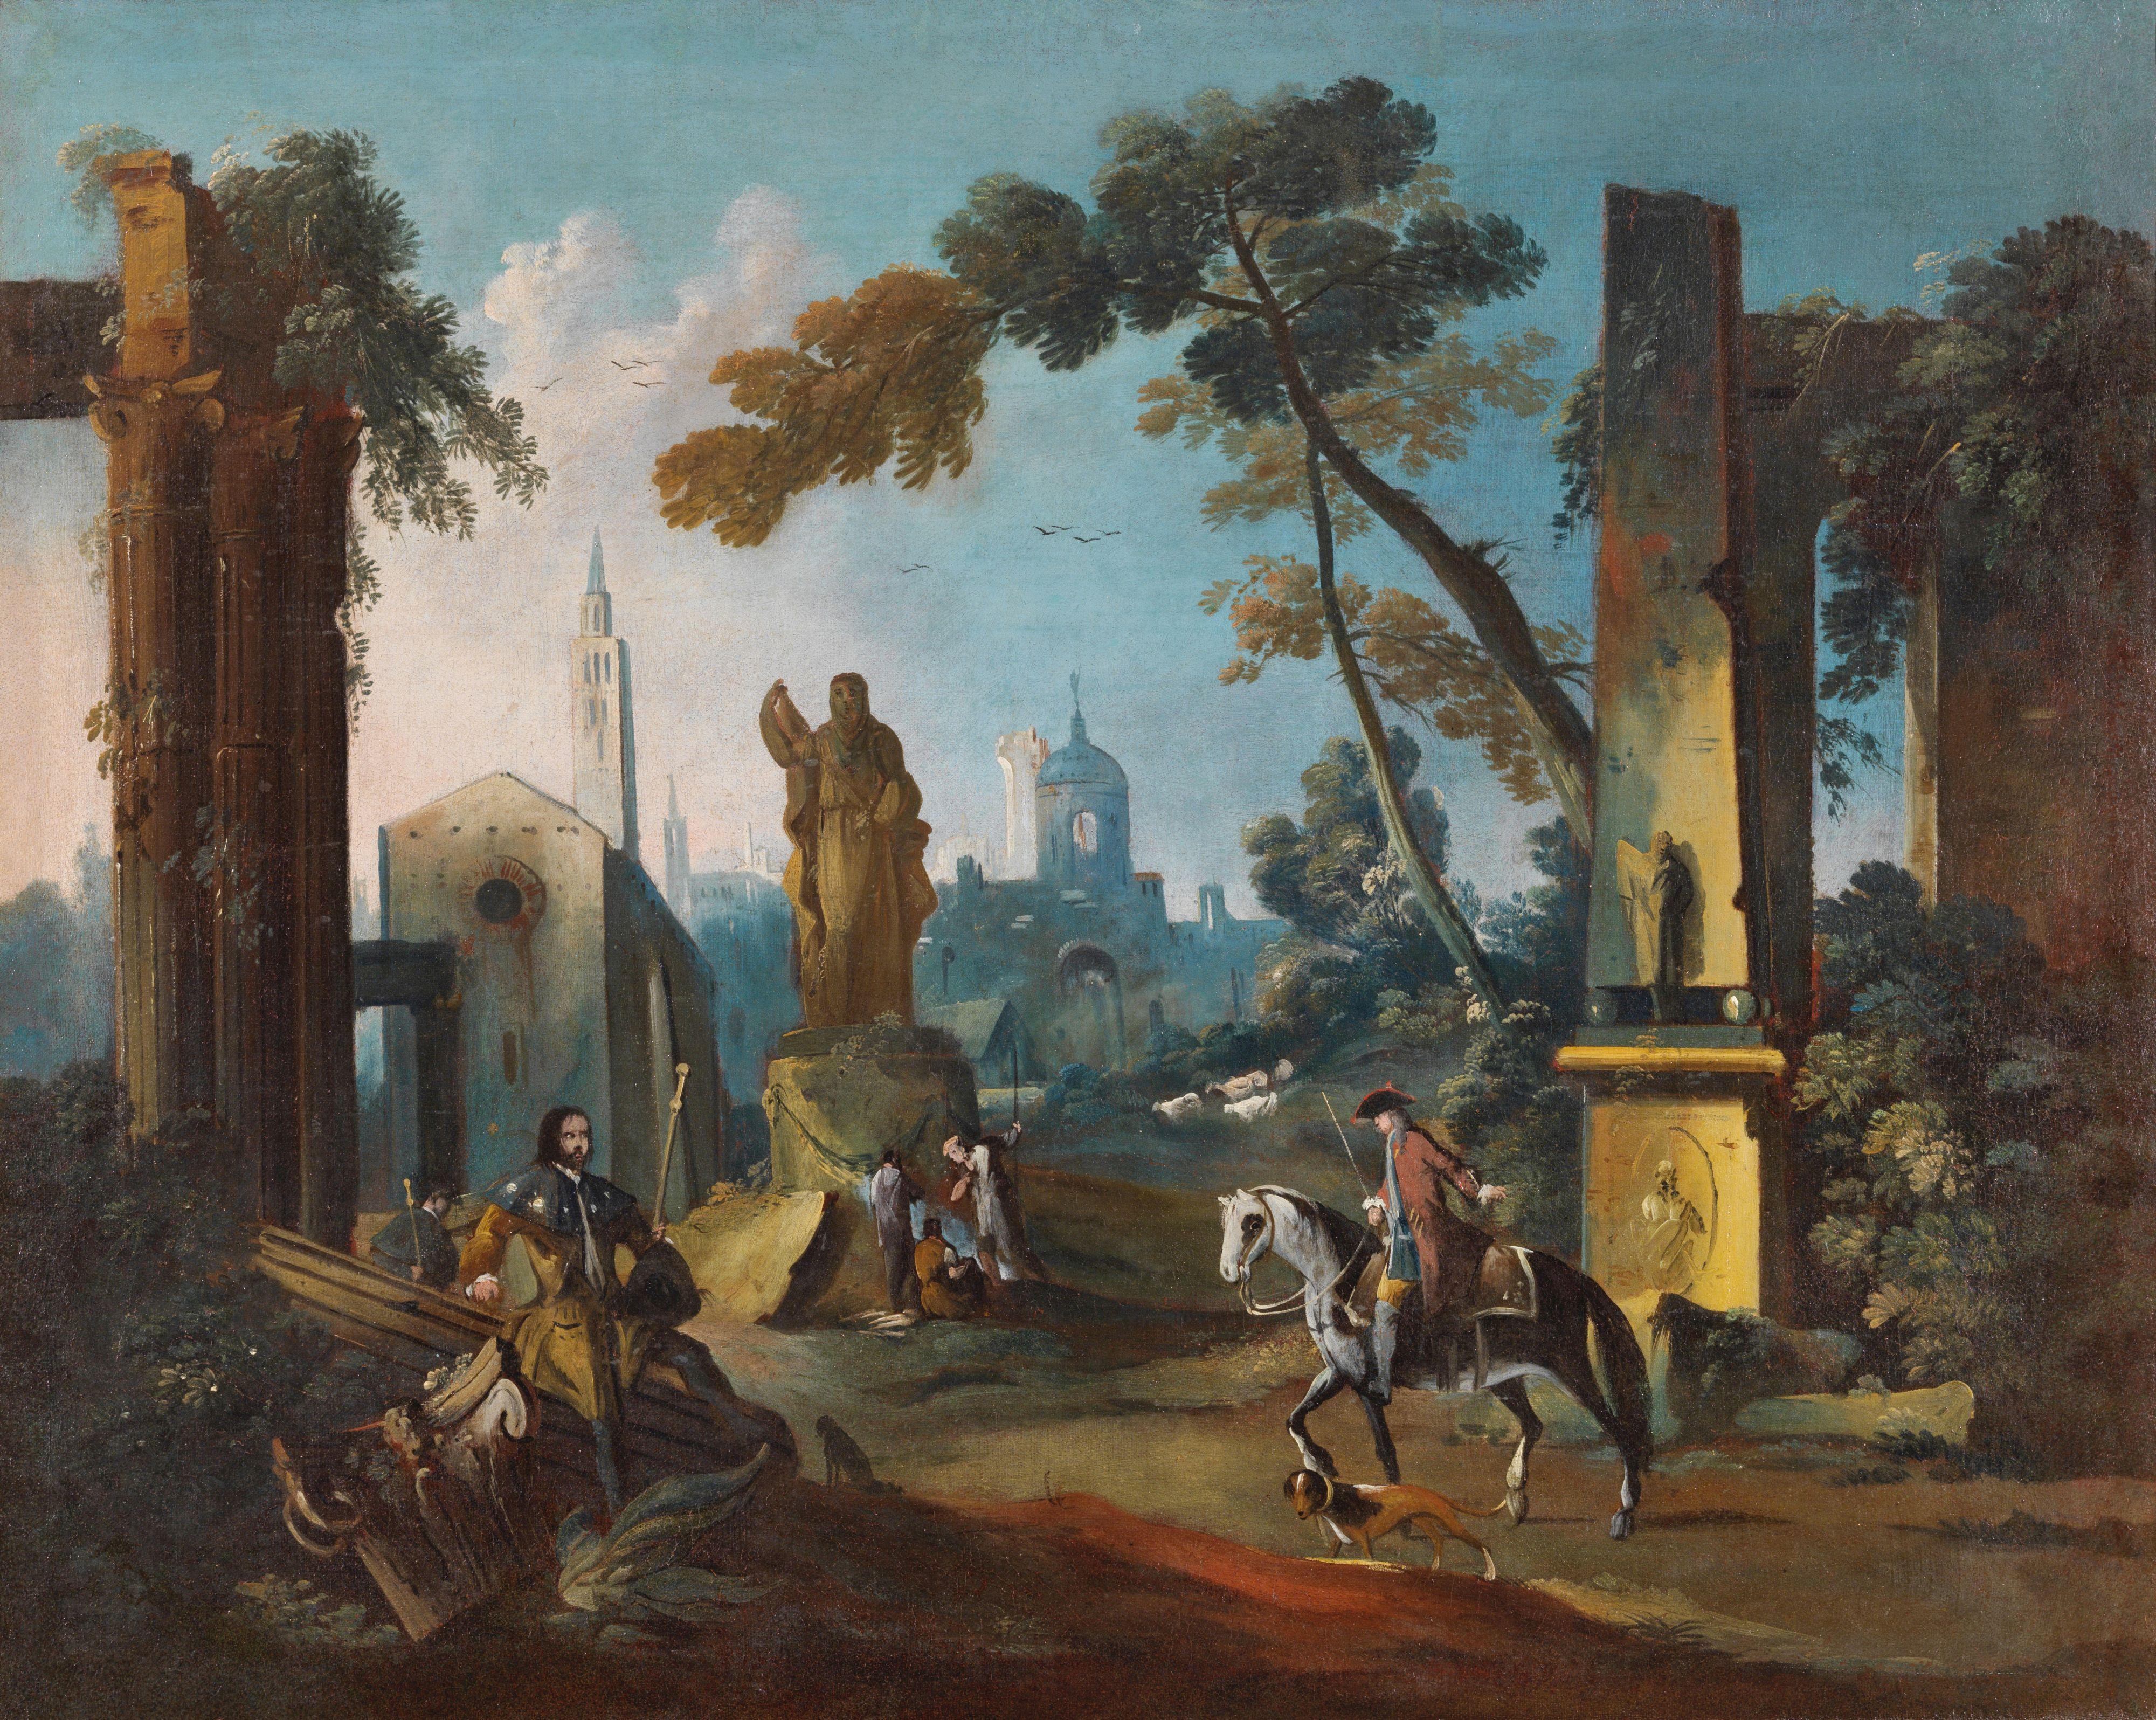 Gaetano Vetturali (Lucca, 1701-1783)  Landscape Painting - 18th Century Architectural Capriccio Gaetano Vetturali Landscape Oil on Canvas 